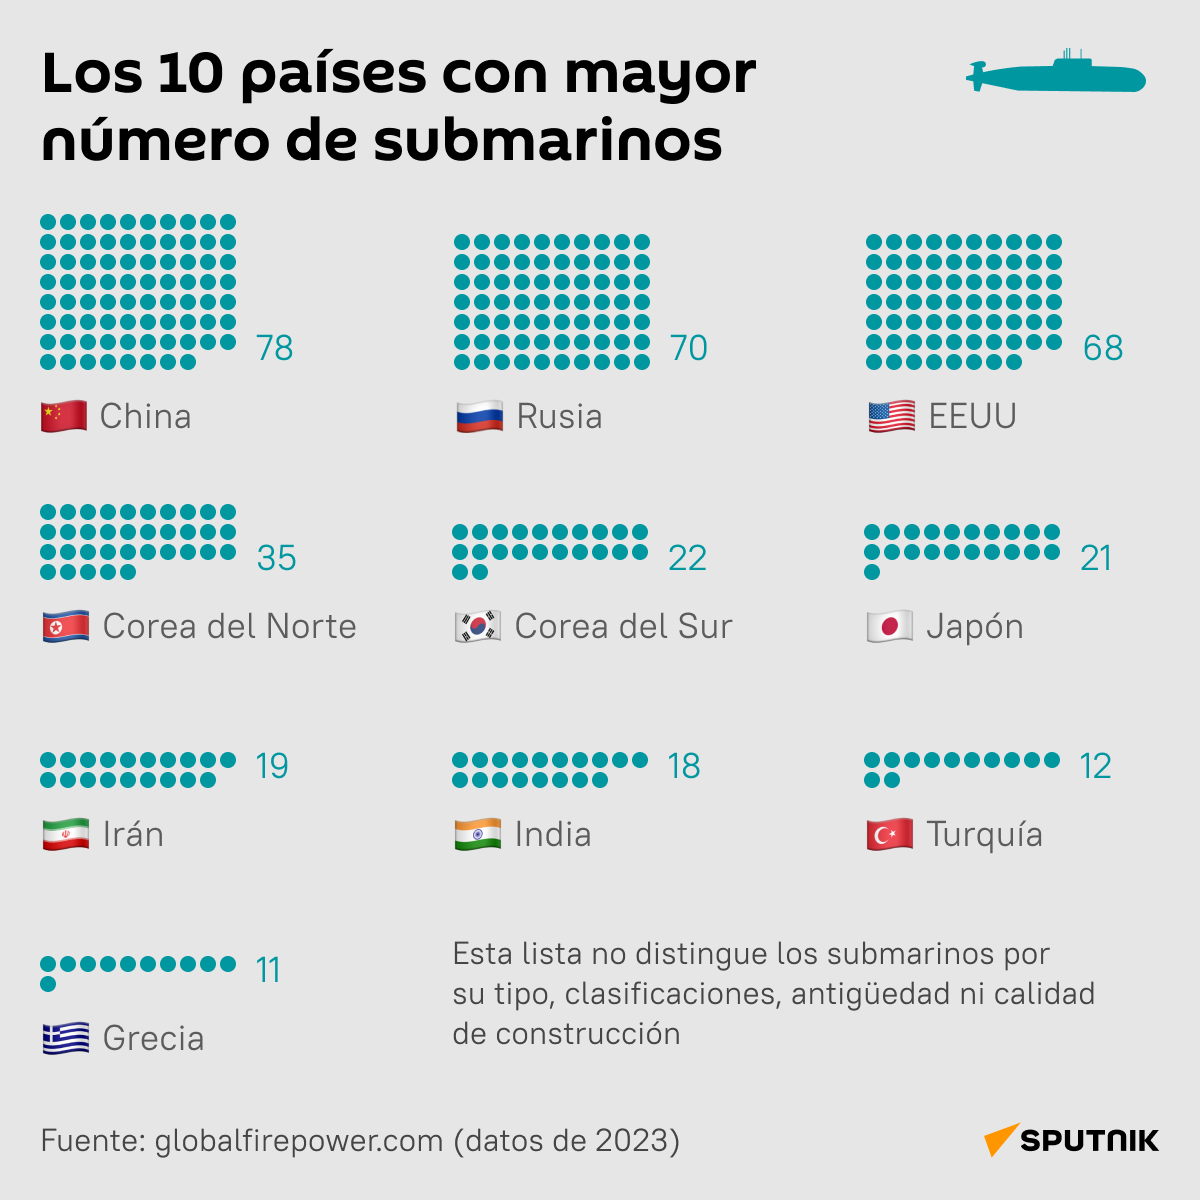 Los 10 países con mayor número de submarinos - Sputnik Mundo